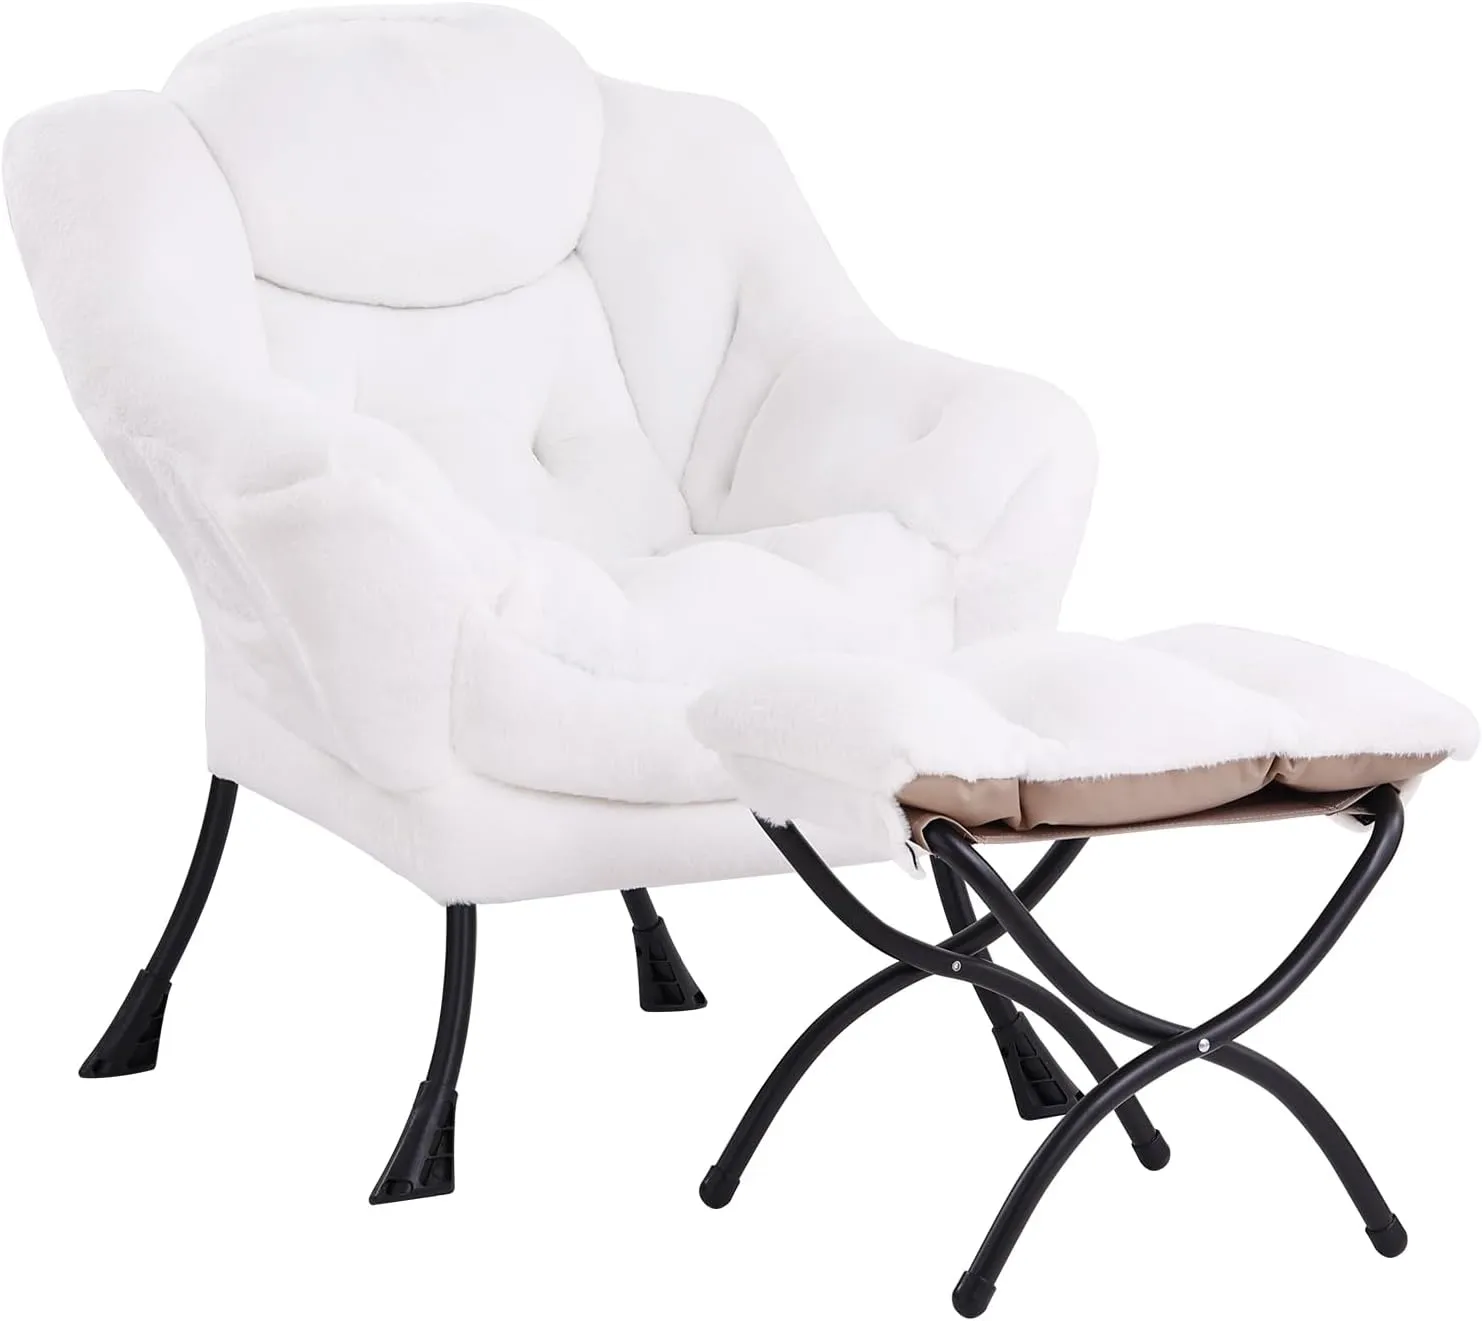 오스만과 함께 Lita Lazy 의자, 현대식 악센트 레저 가재 가득한 소파 의자, 팔걸이가있는 라운지 독서 의자 및 거실을위한 측면 주머니, 침실 작은 공간